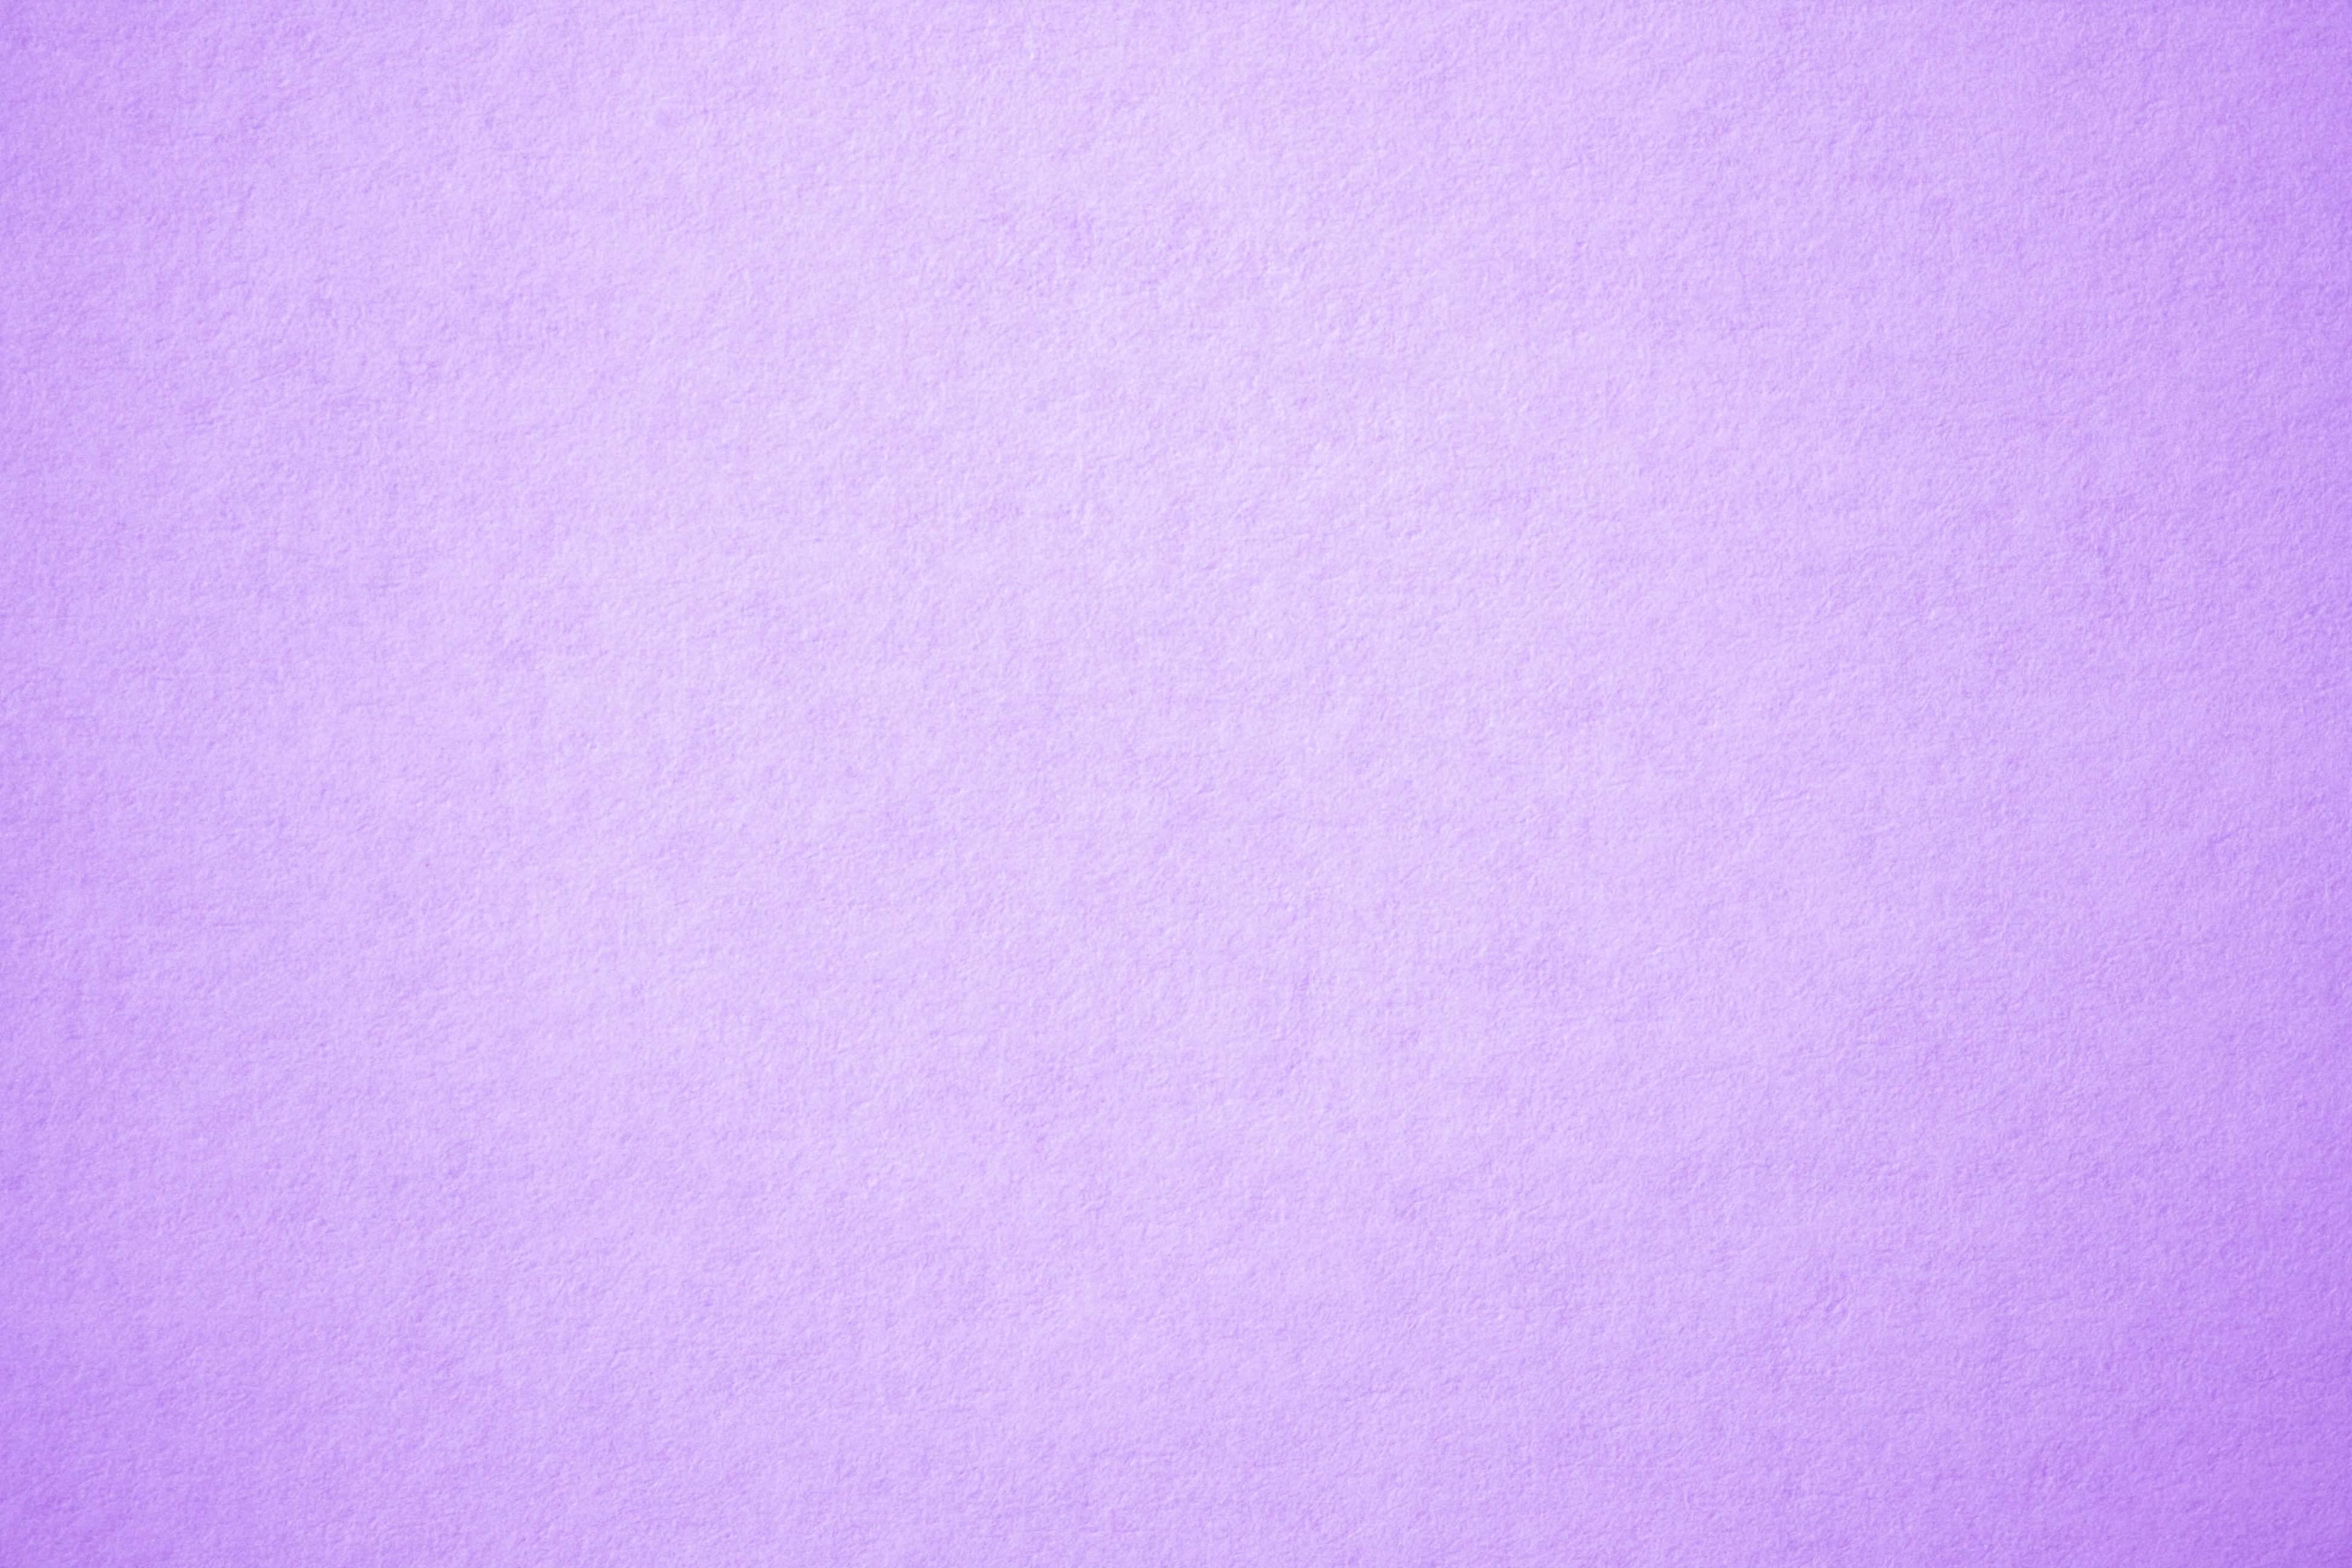 Plain Purple Backgrounds - Wallpaper Cave